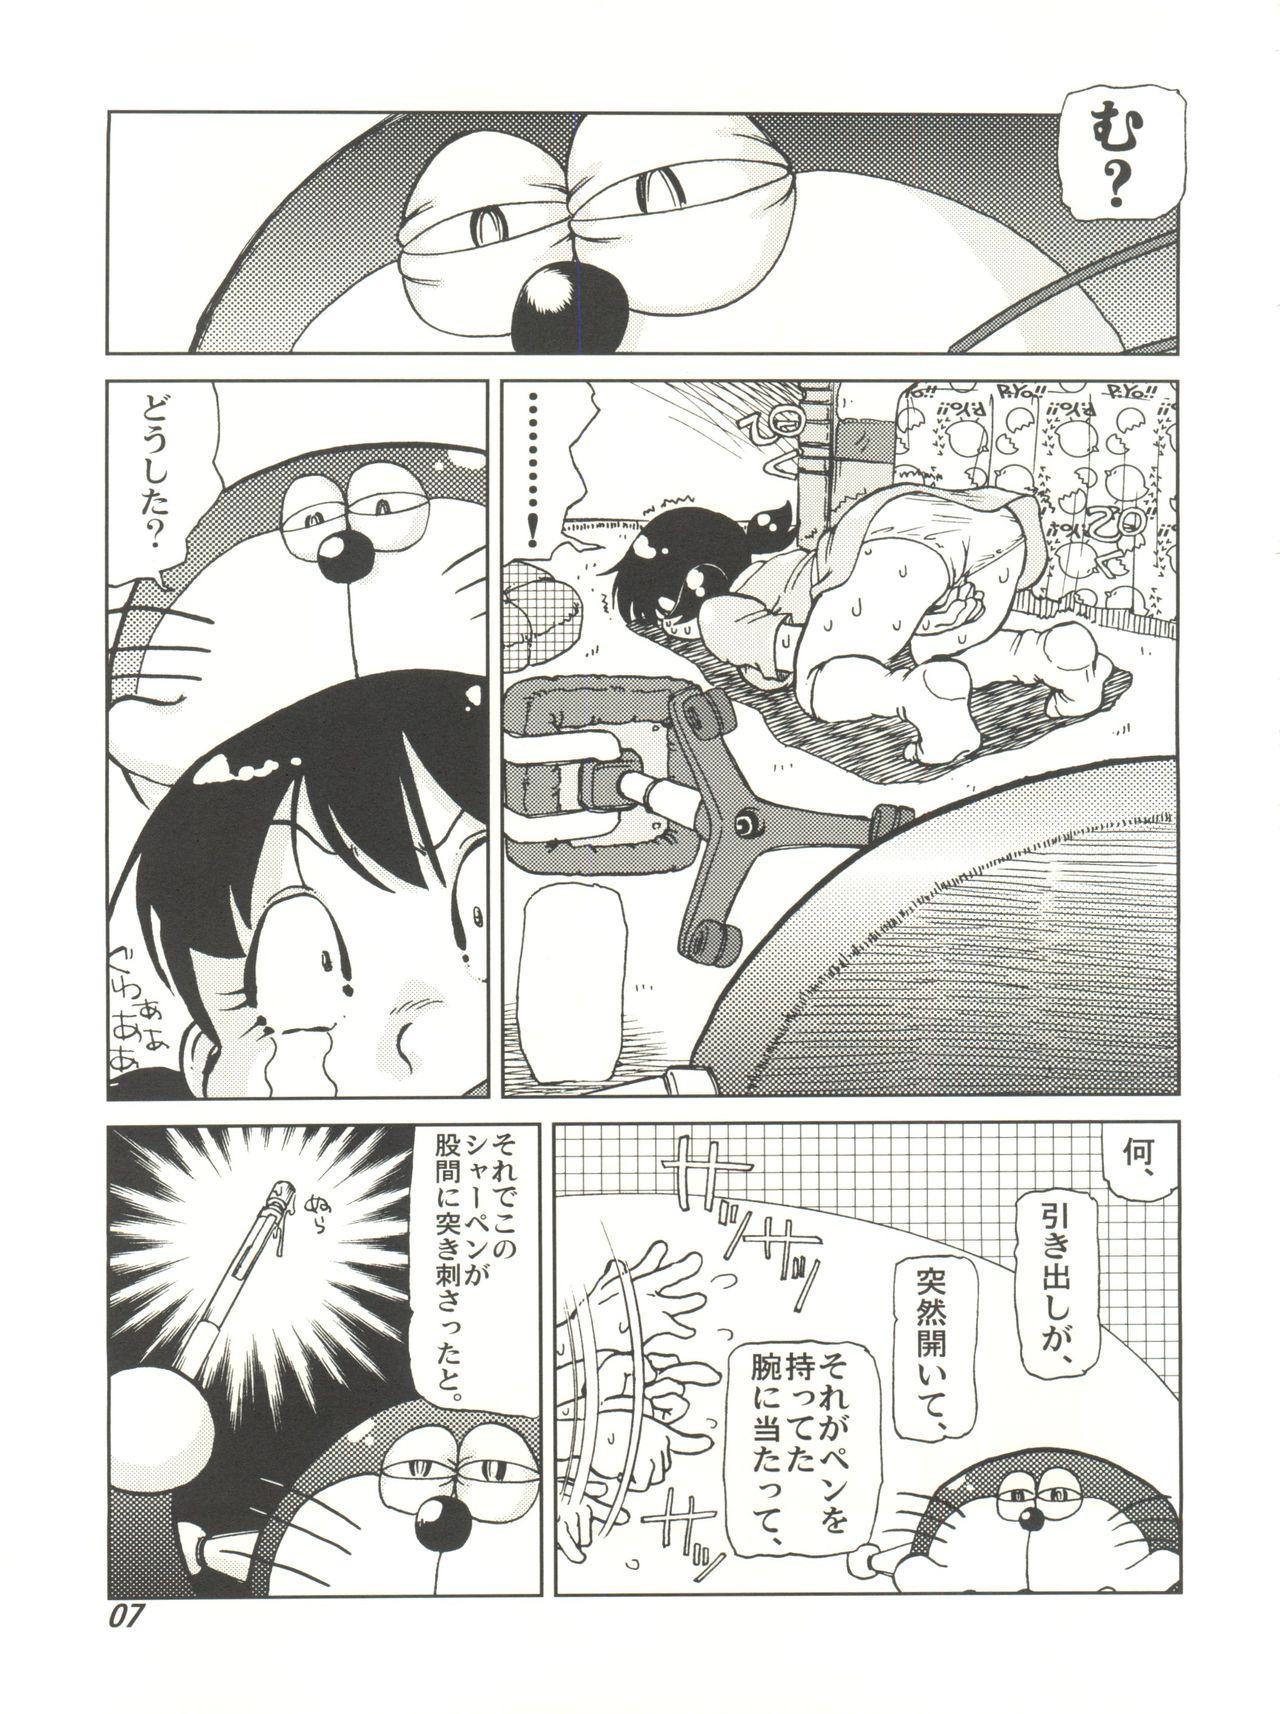 Women Sucking Dicks COUNTER DORA SHIZUKA & KAKUGARI GUARDIAN - Doraemon Forbidden - Page 6